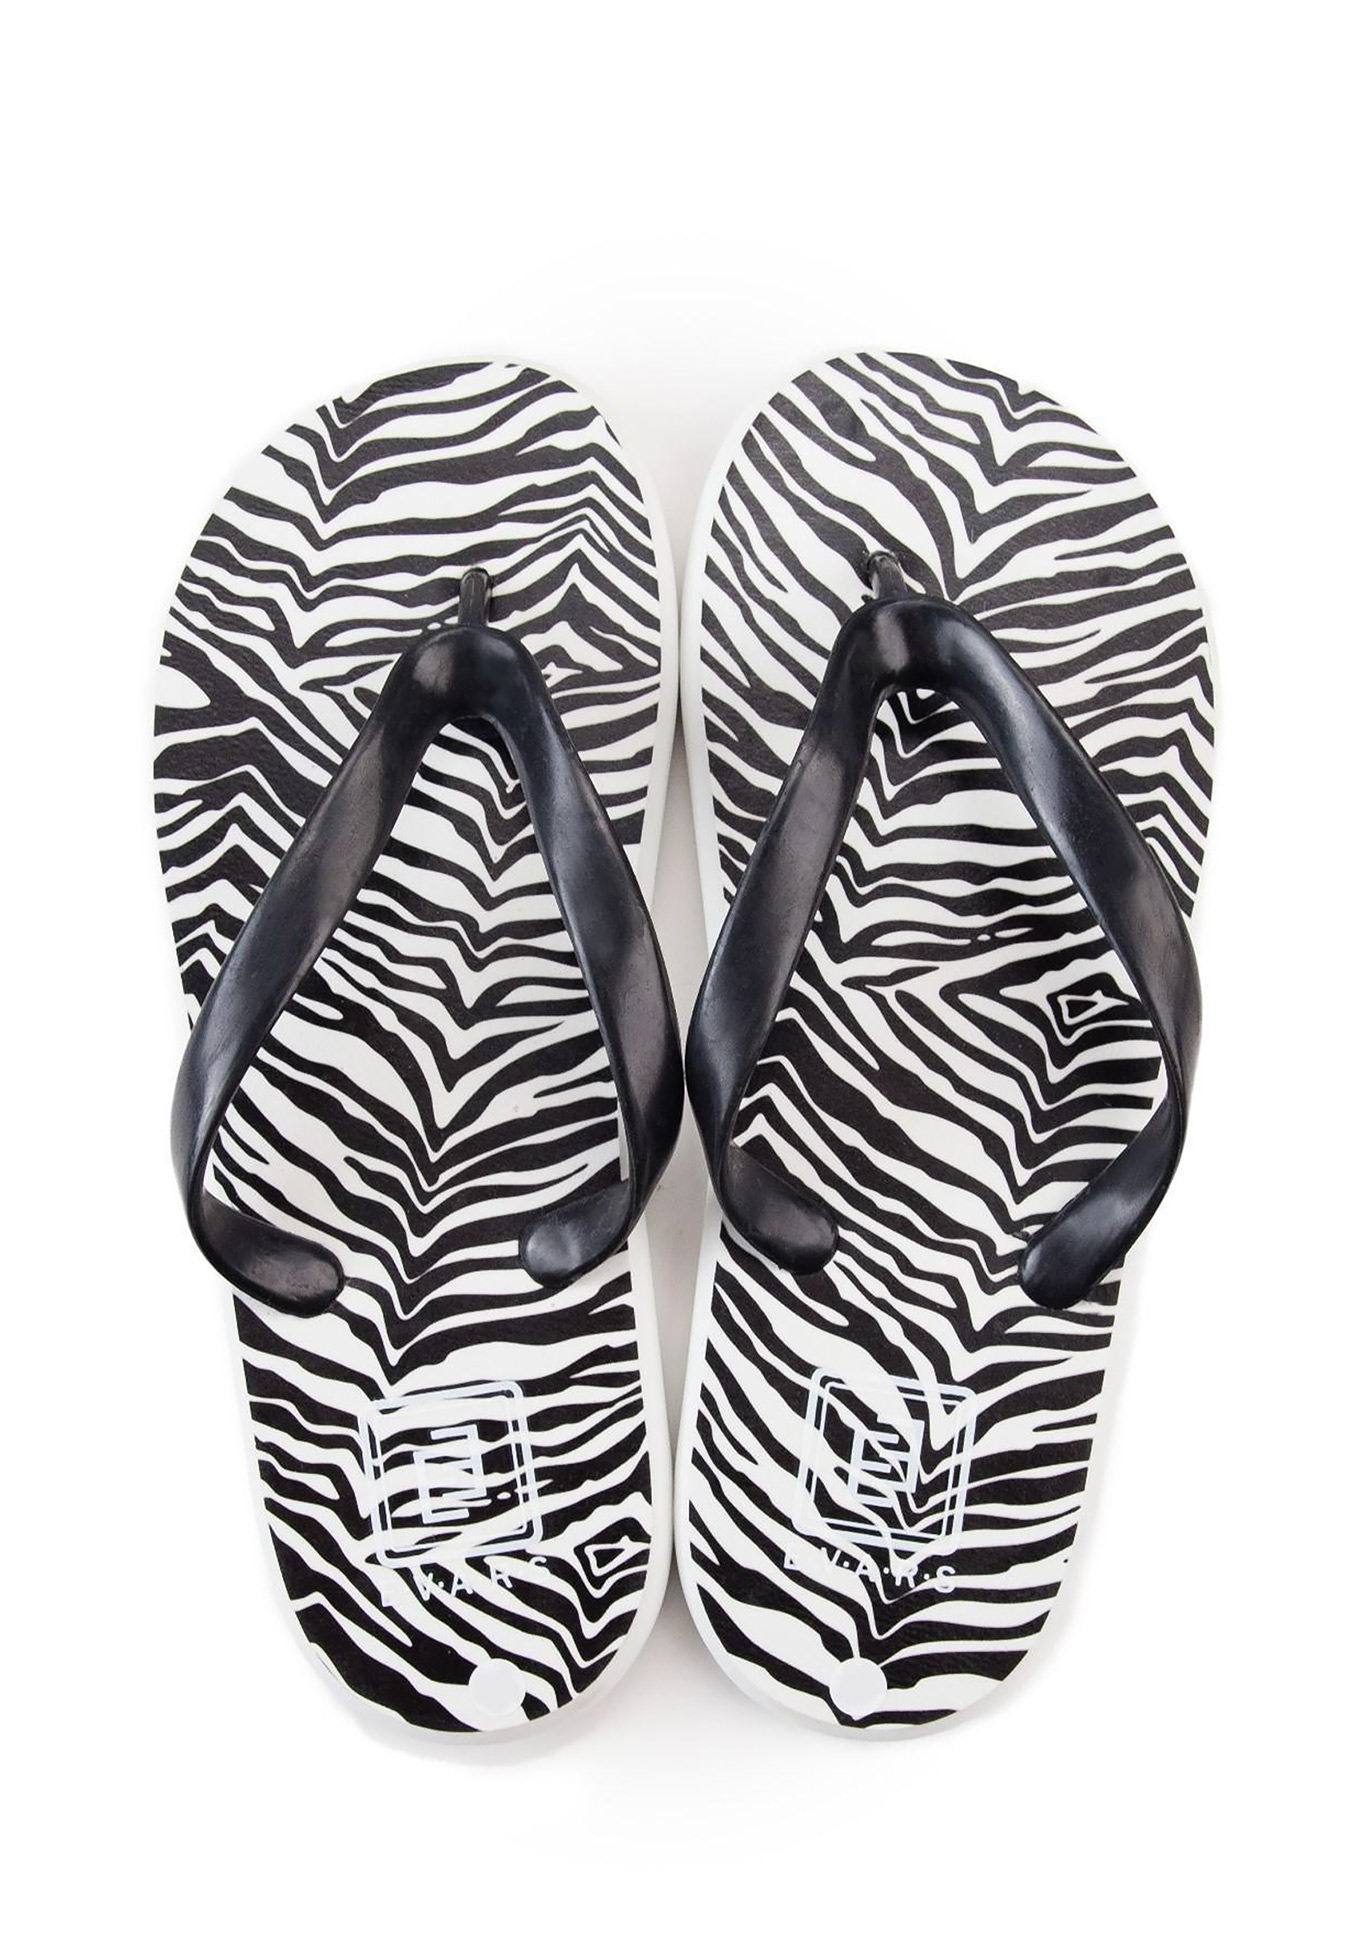 Сланцы женские "Zebra", размер 39, цвет белый/черный - фото 2